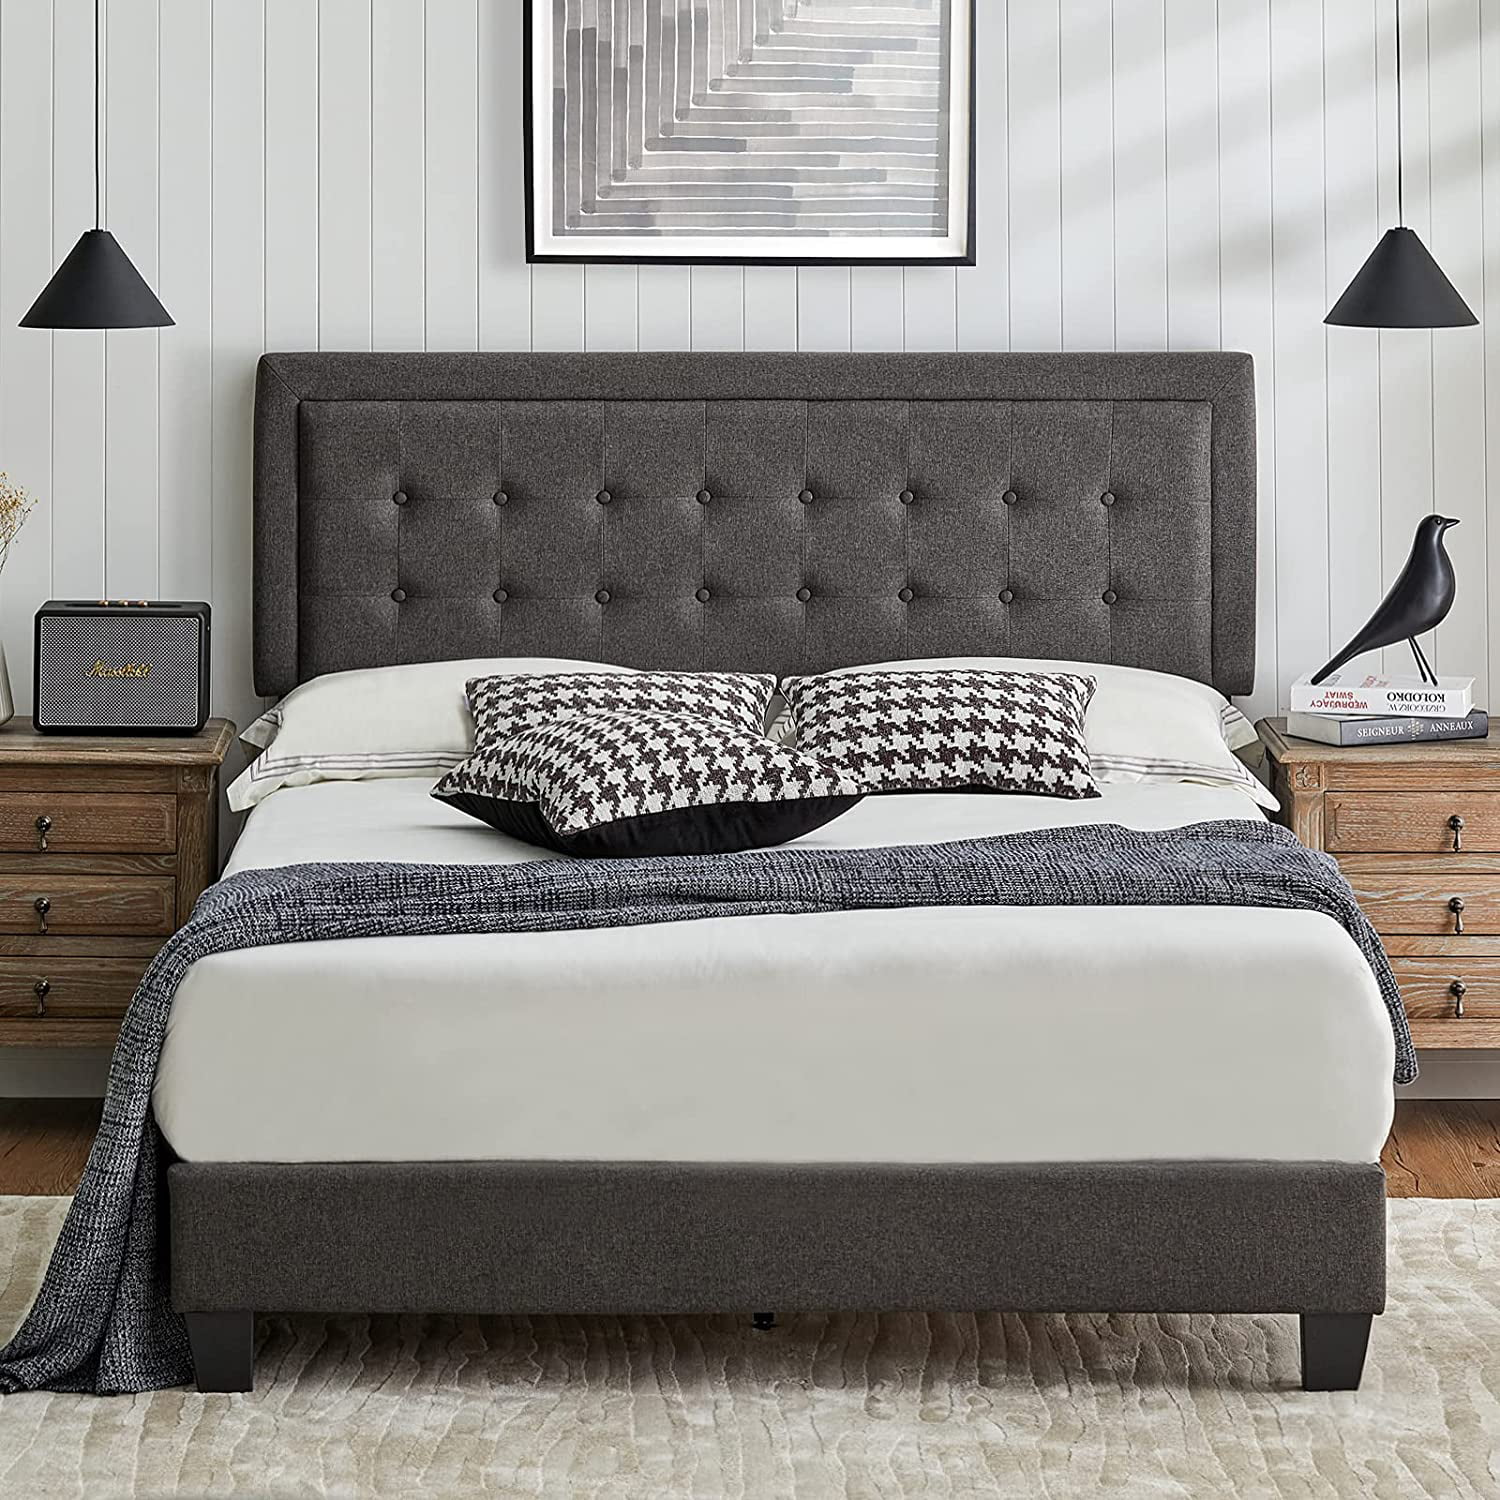 D-TOOLS Full Bed Frame Upholstered Platform Bed with Adjustable